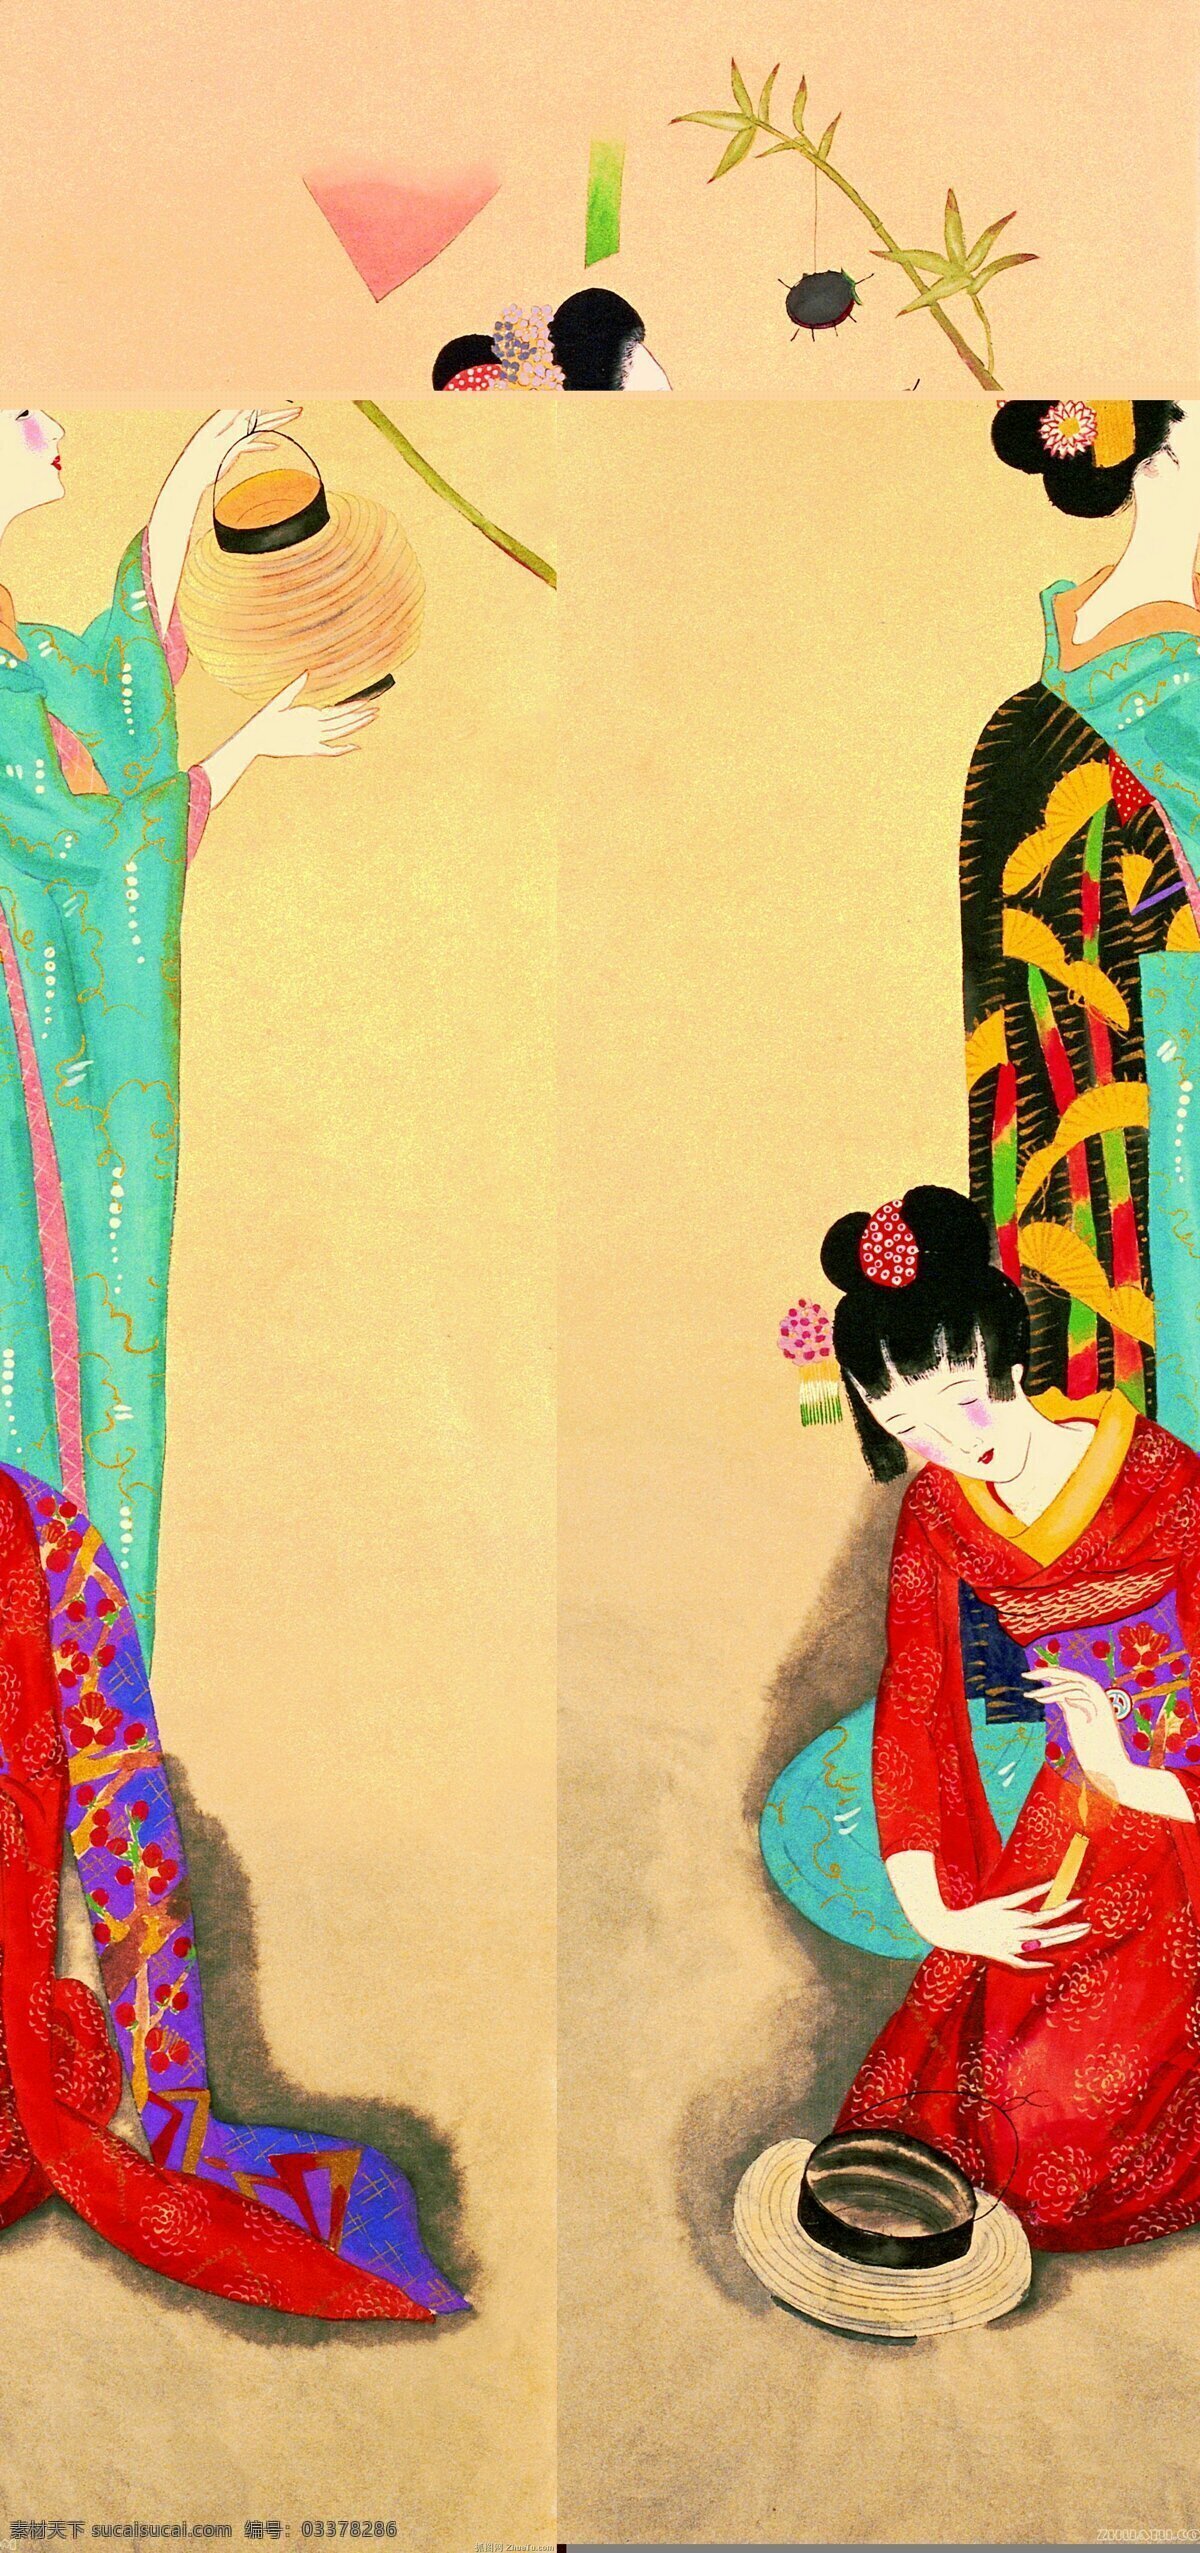 日本美女 高清 大图 美女 效果图 装饰画 挂画 贴画 壁纸 背景墙